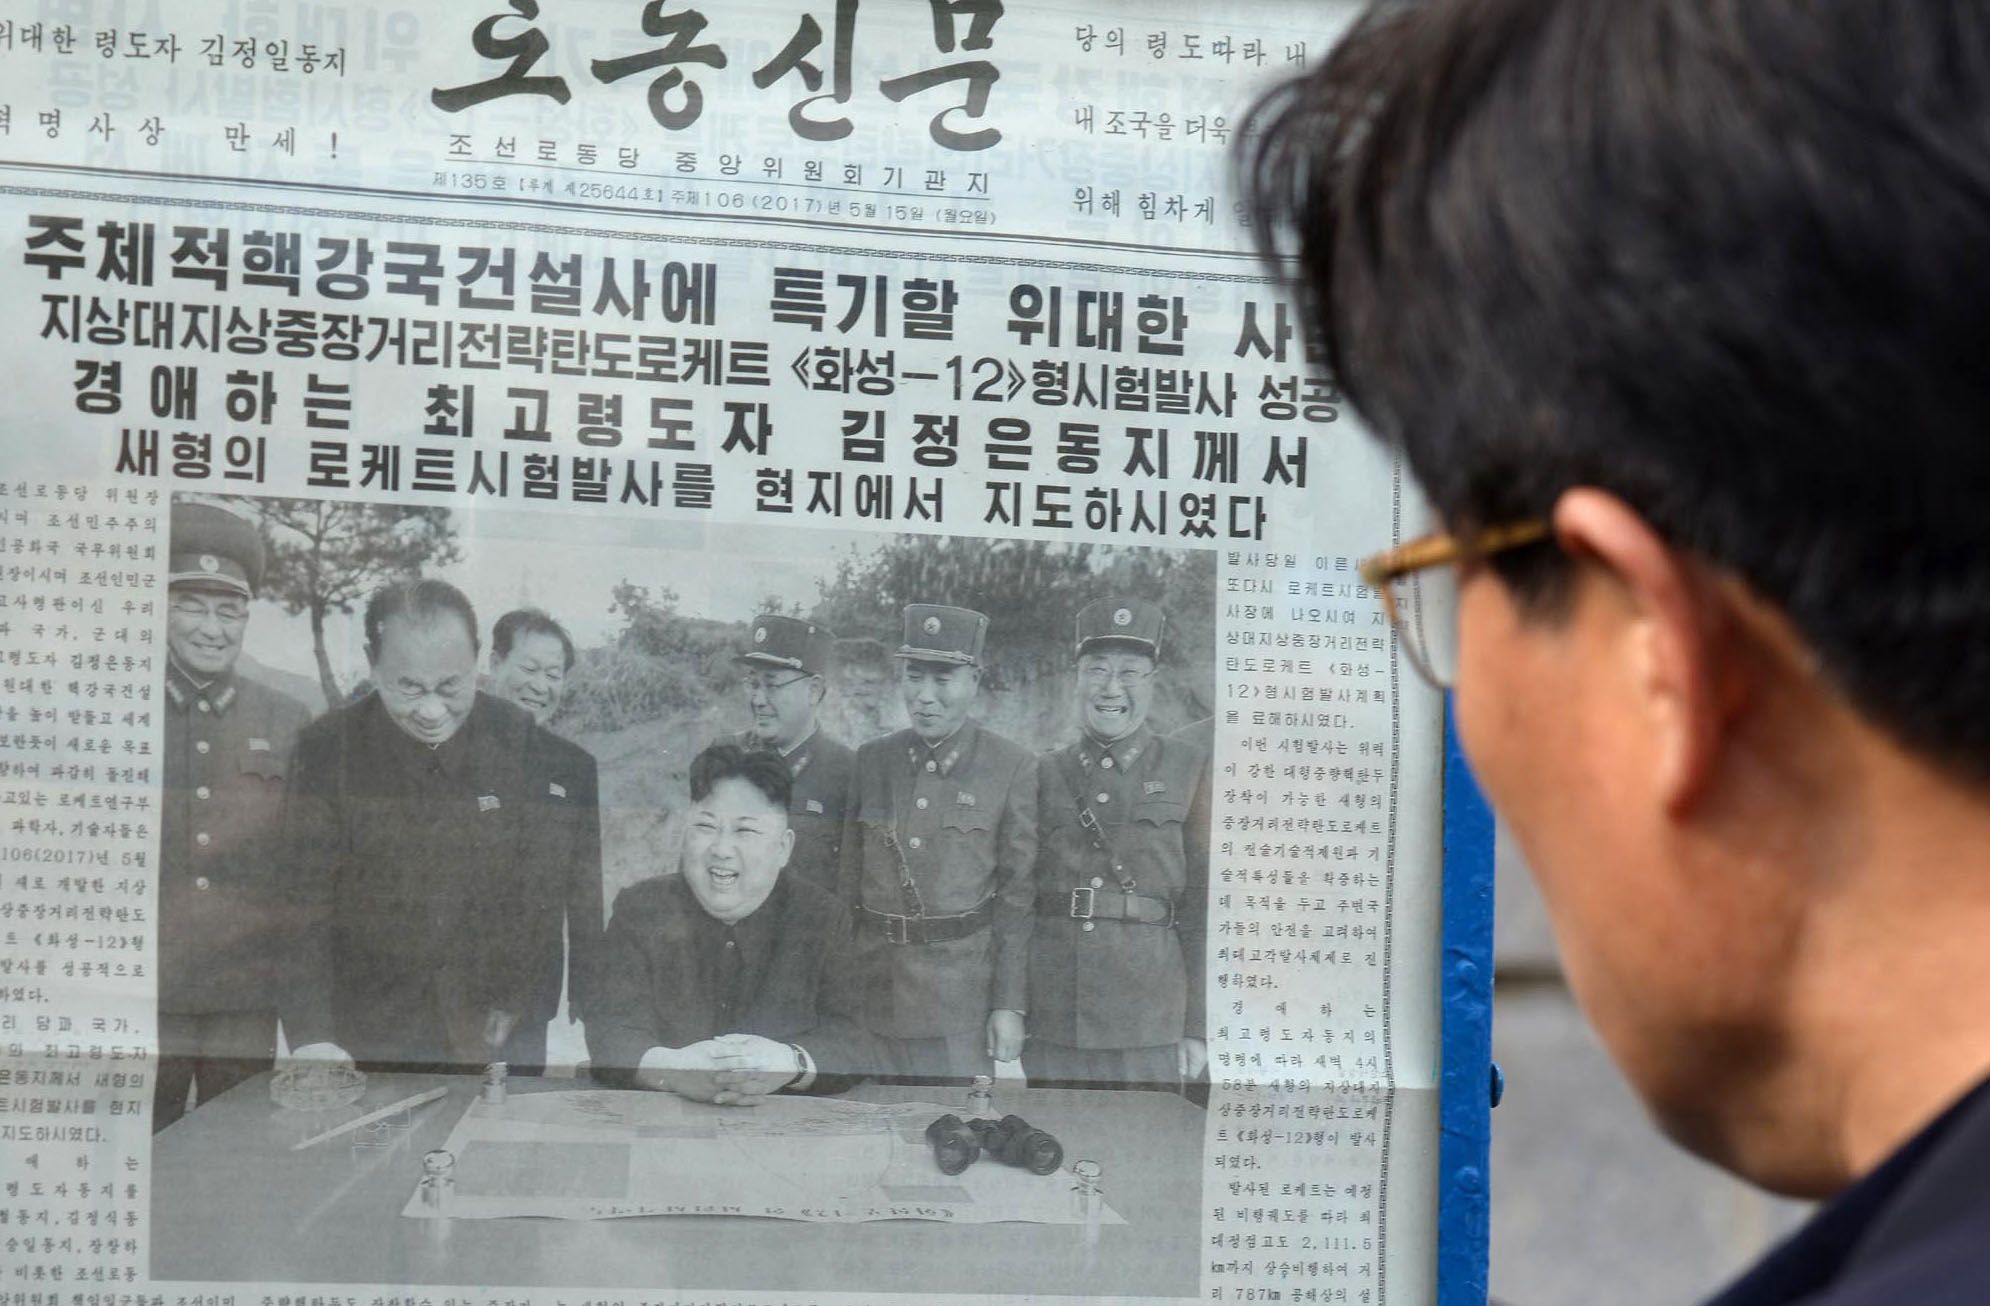 North Korean newspaper